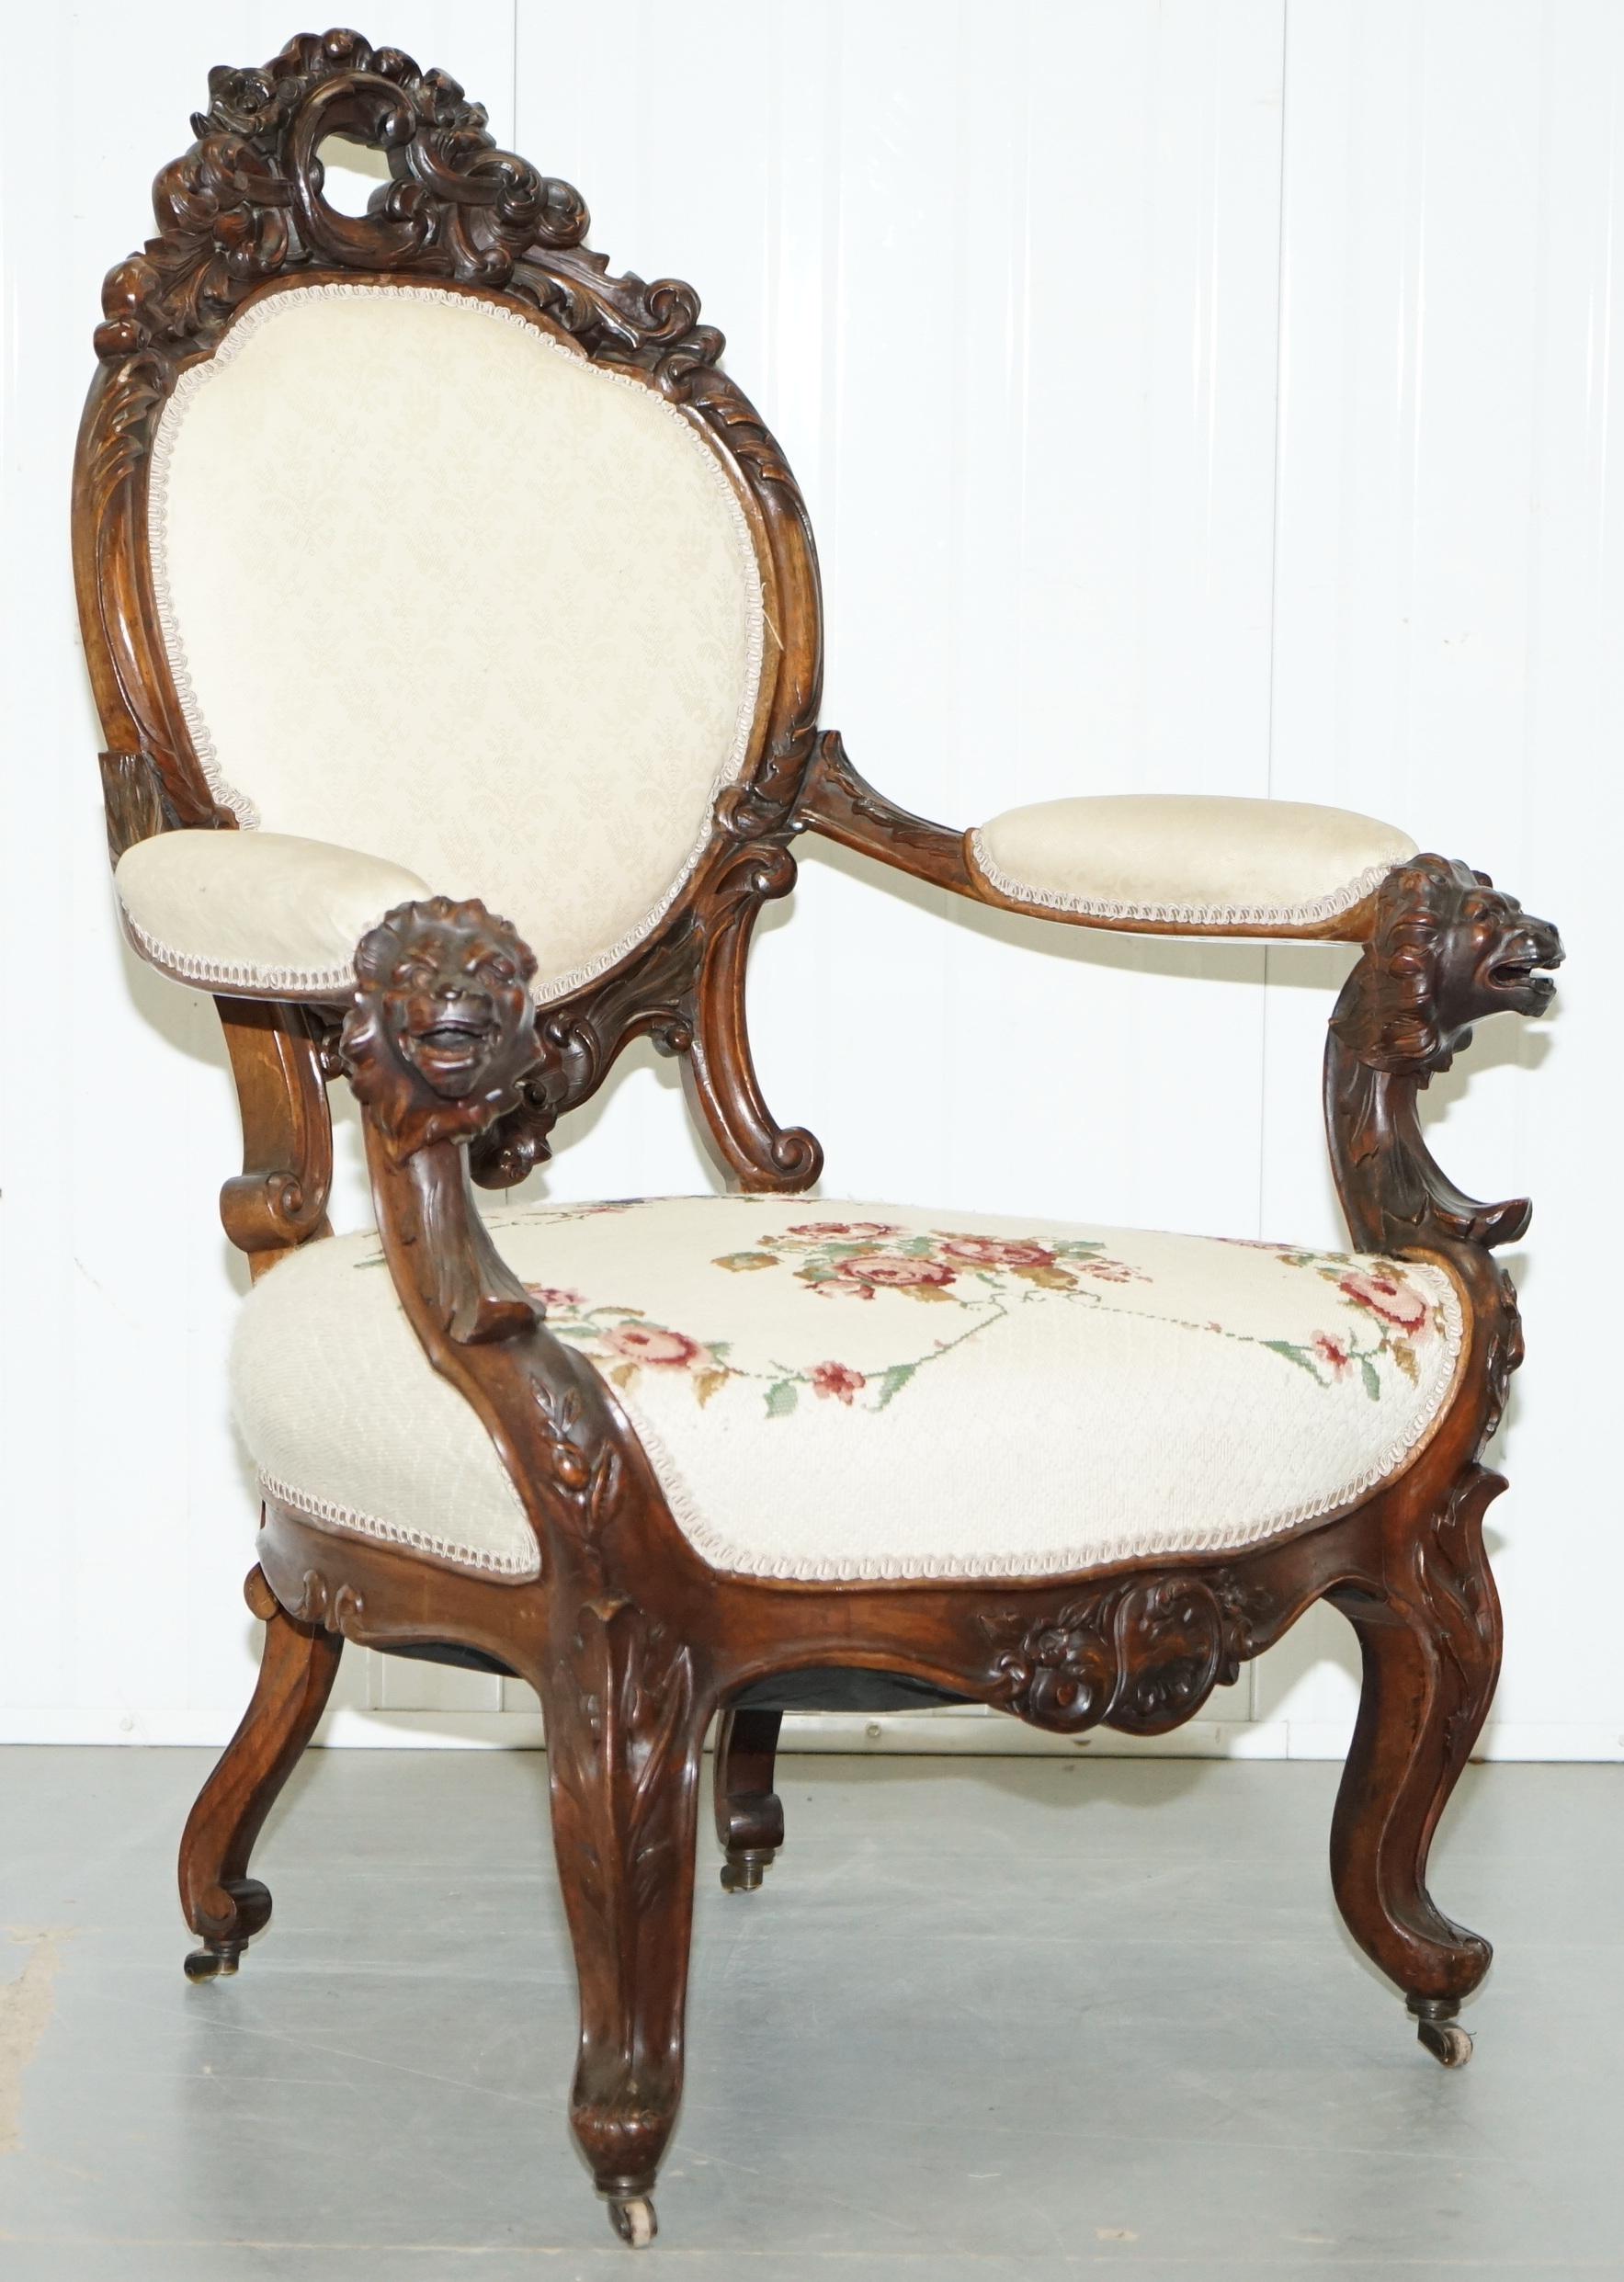 Wir freuen uns, diesen sehr seltenen, handgeschnitzten viktorianischen Salon-Sessel mit Löwen-Details und gestempelten Rollen zum Verkauf anbieten zu können.

Ein guter Fund, seine selten auf Show gerahmt Salonsessel mit Schnitzerei diese